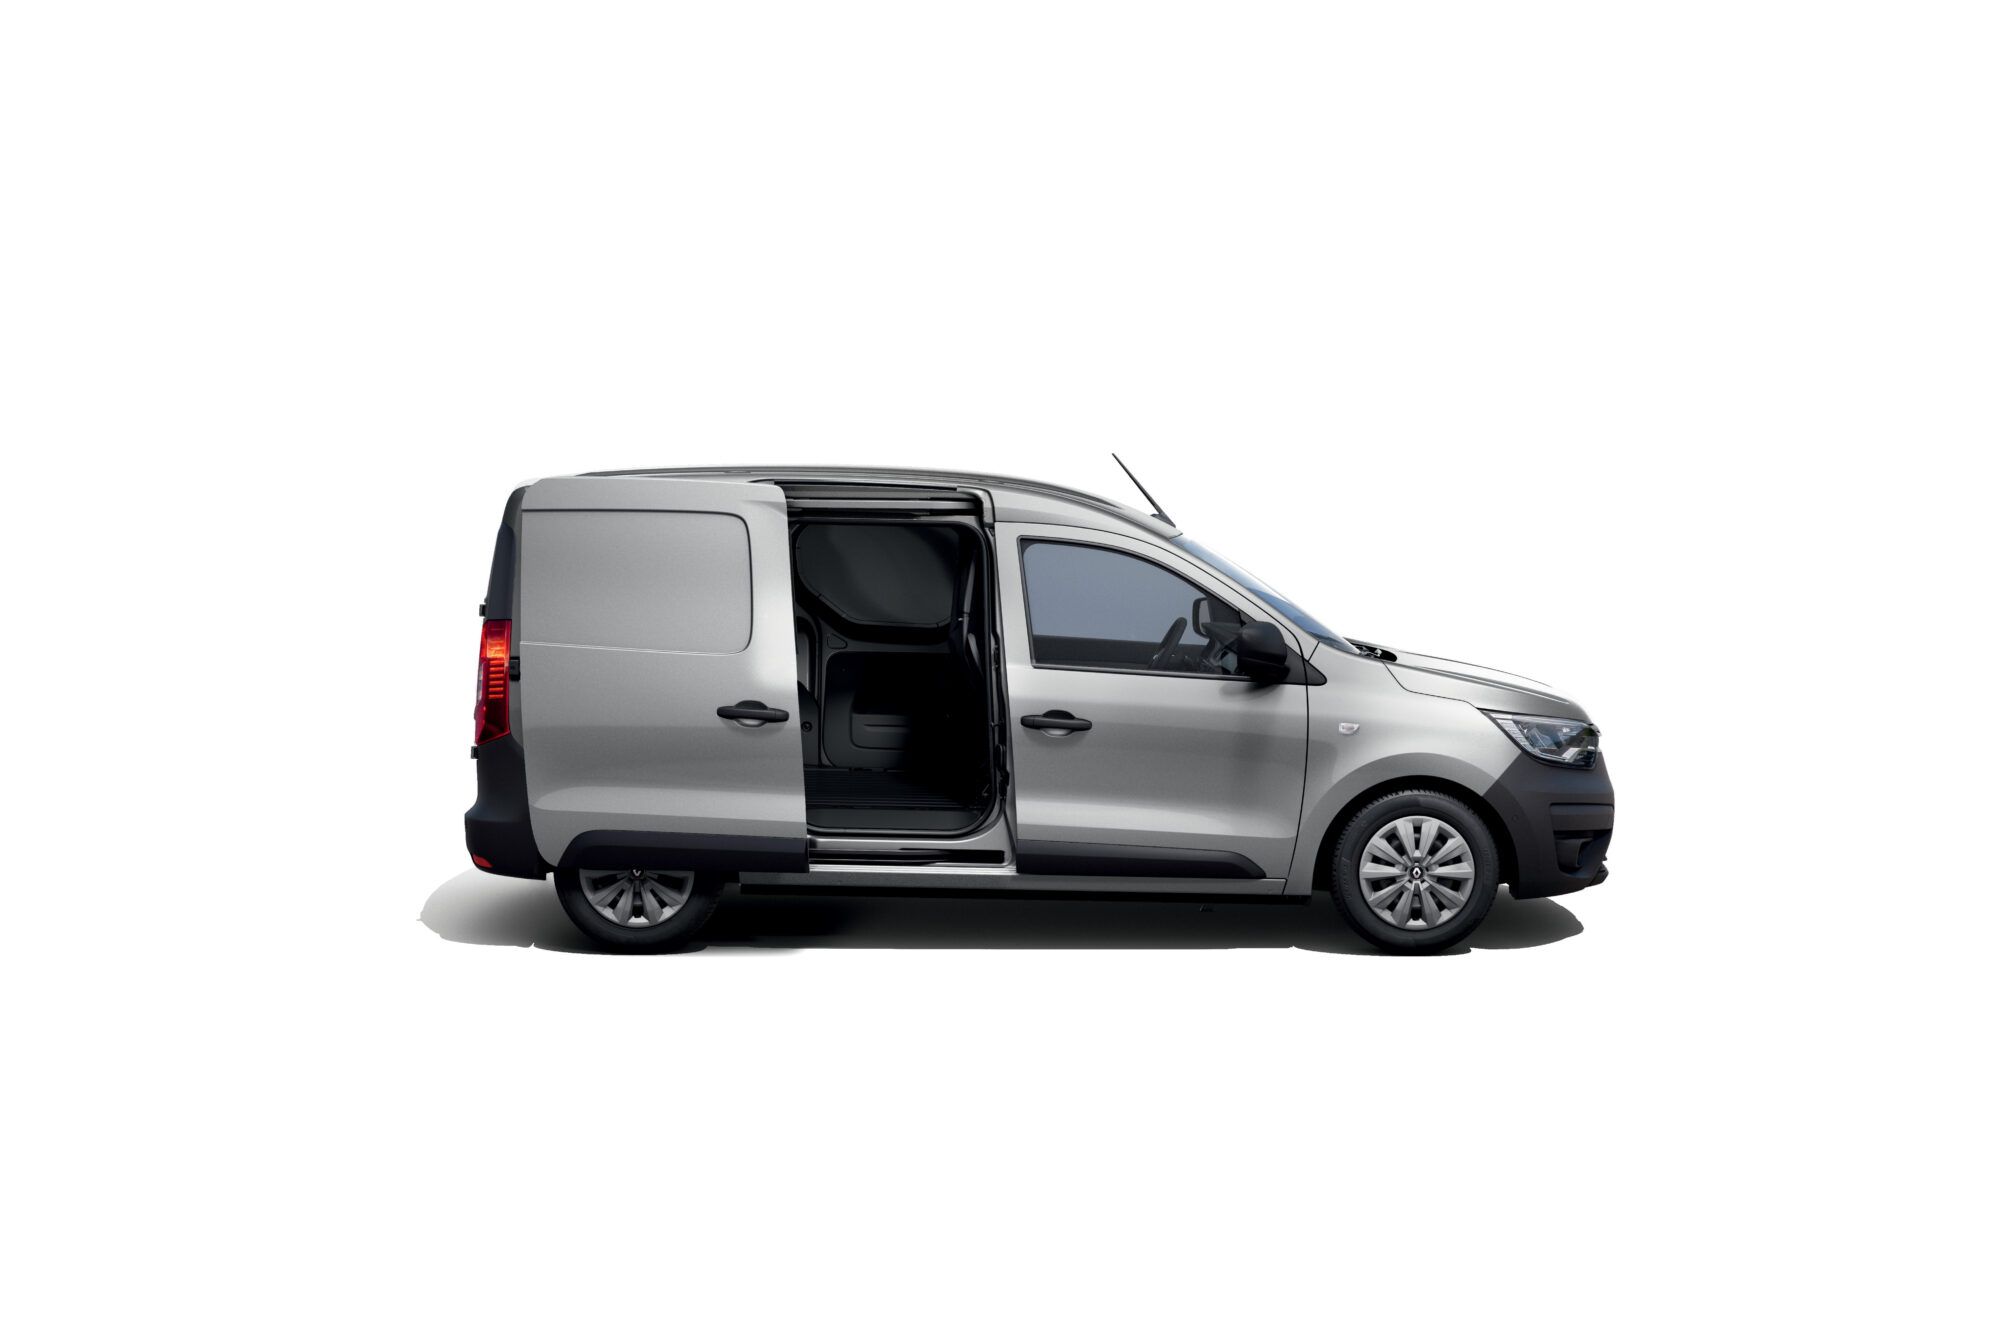 2021 - New Renault Express Van - Studio shoots